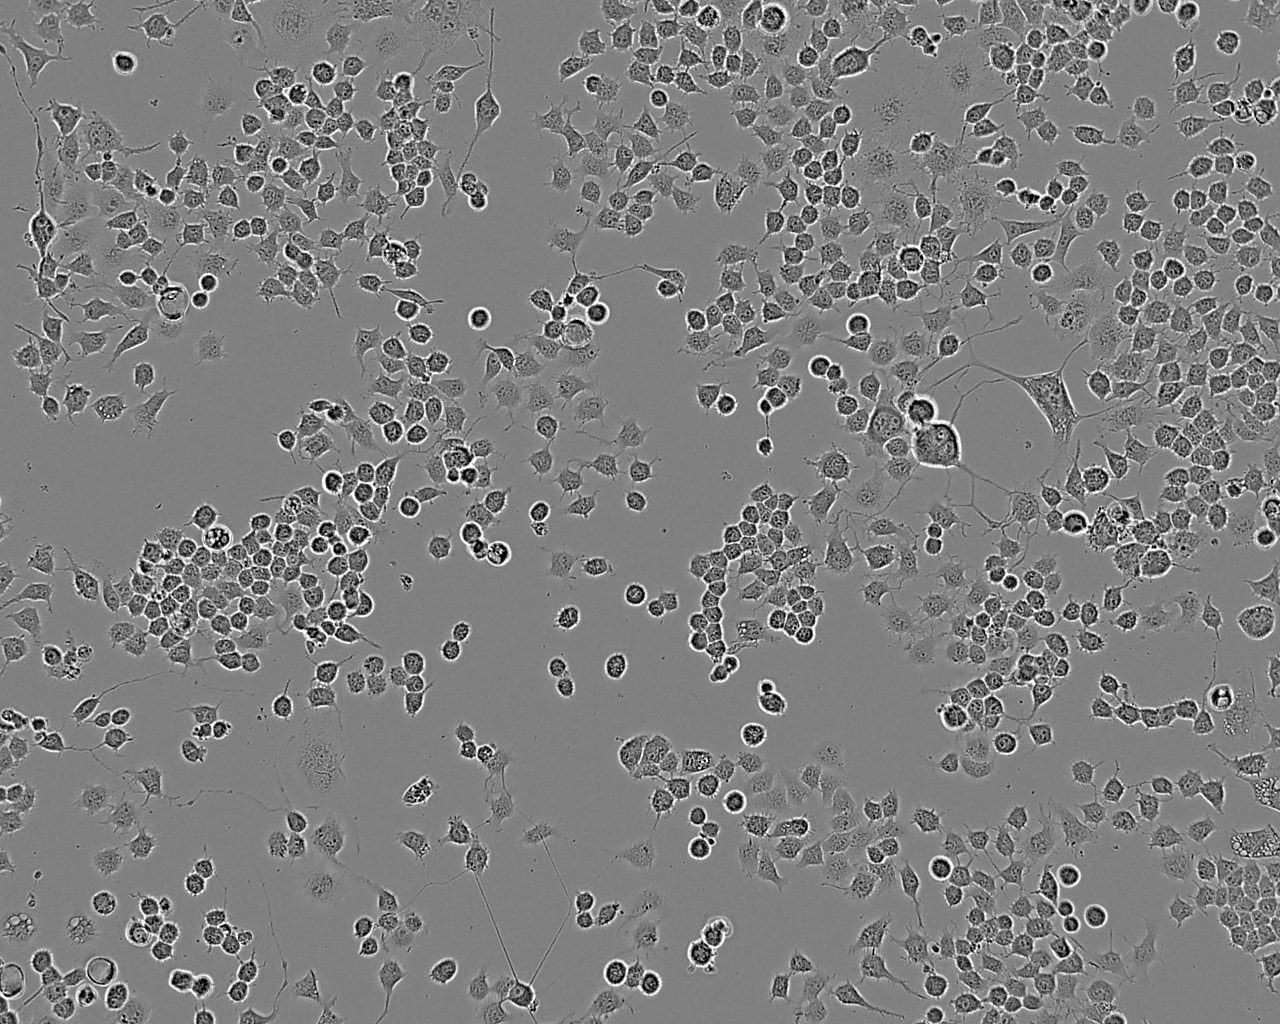 GI-1细胞：人神经胶质瘤和肉瘤细胞系